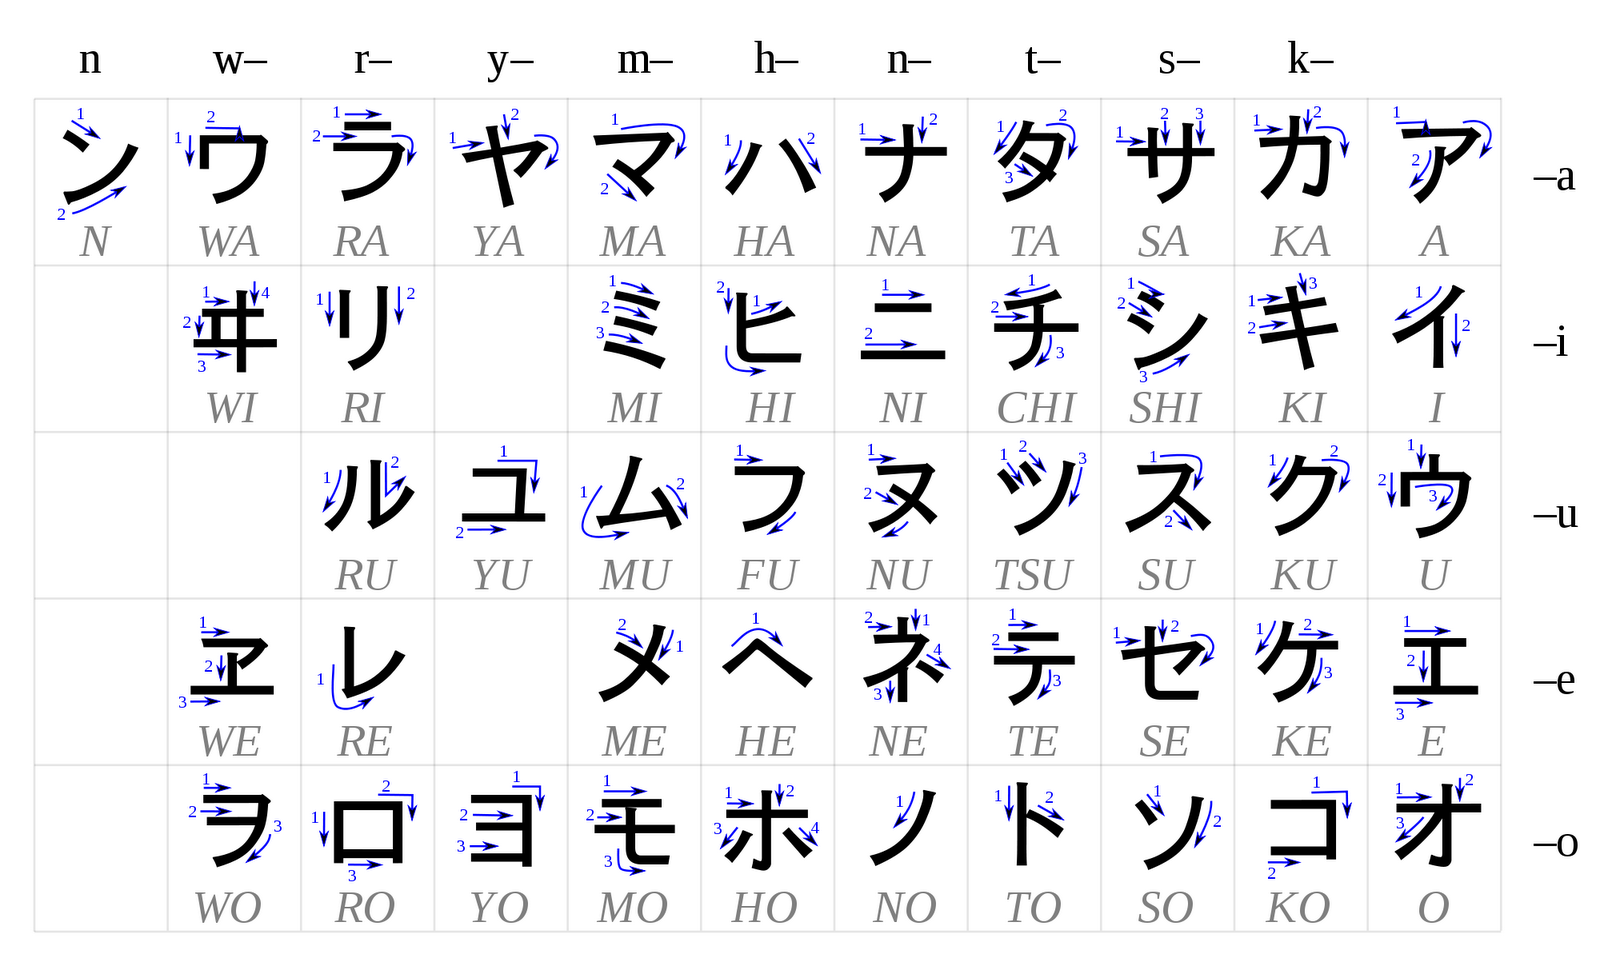 Asley's Note: Fast Way Memorize Hiragana and Katakana